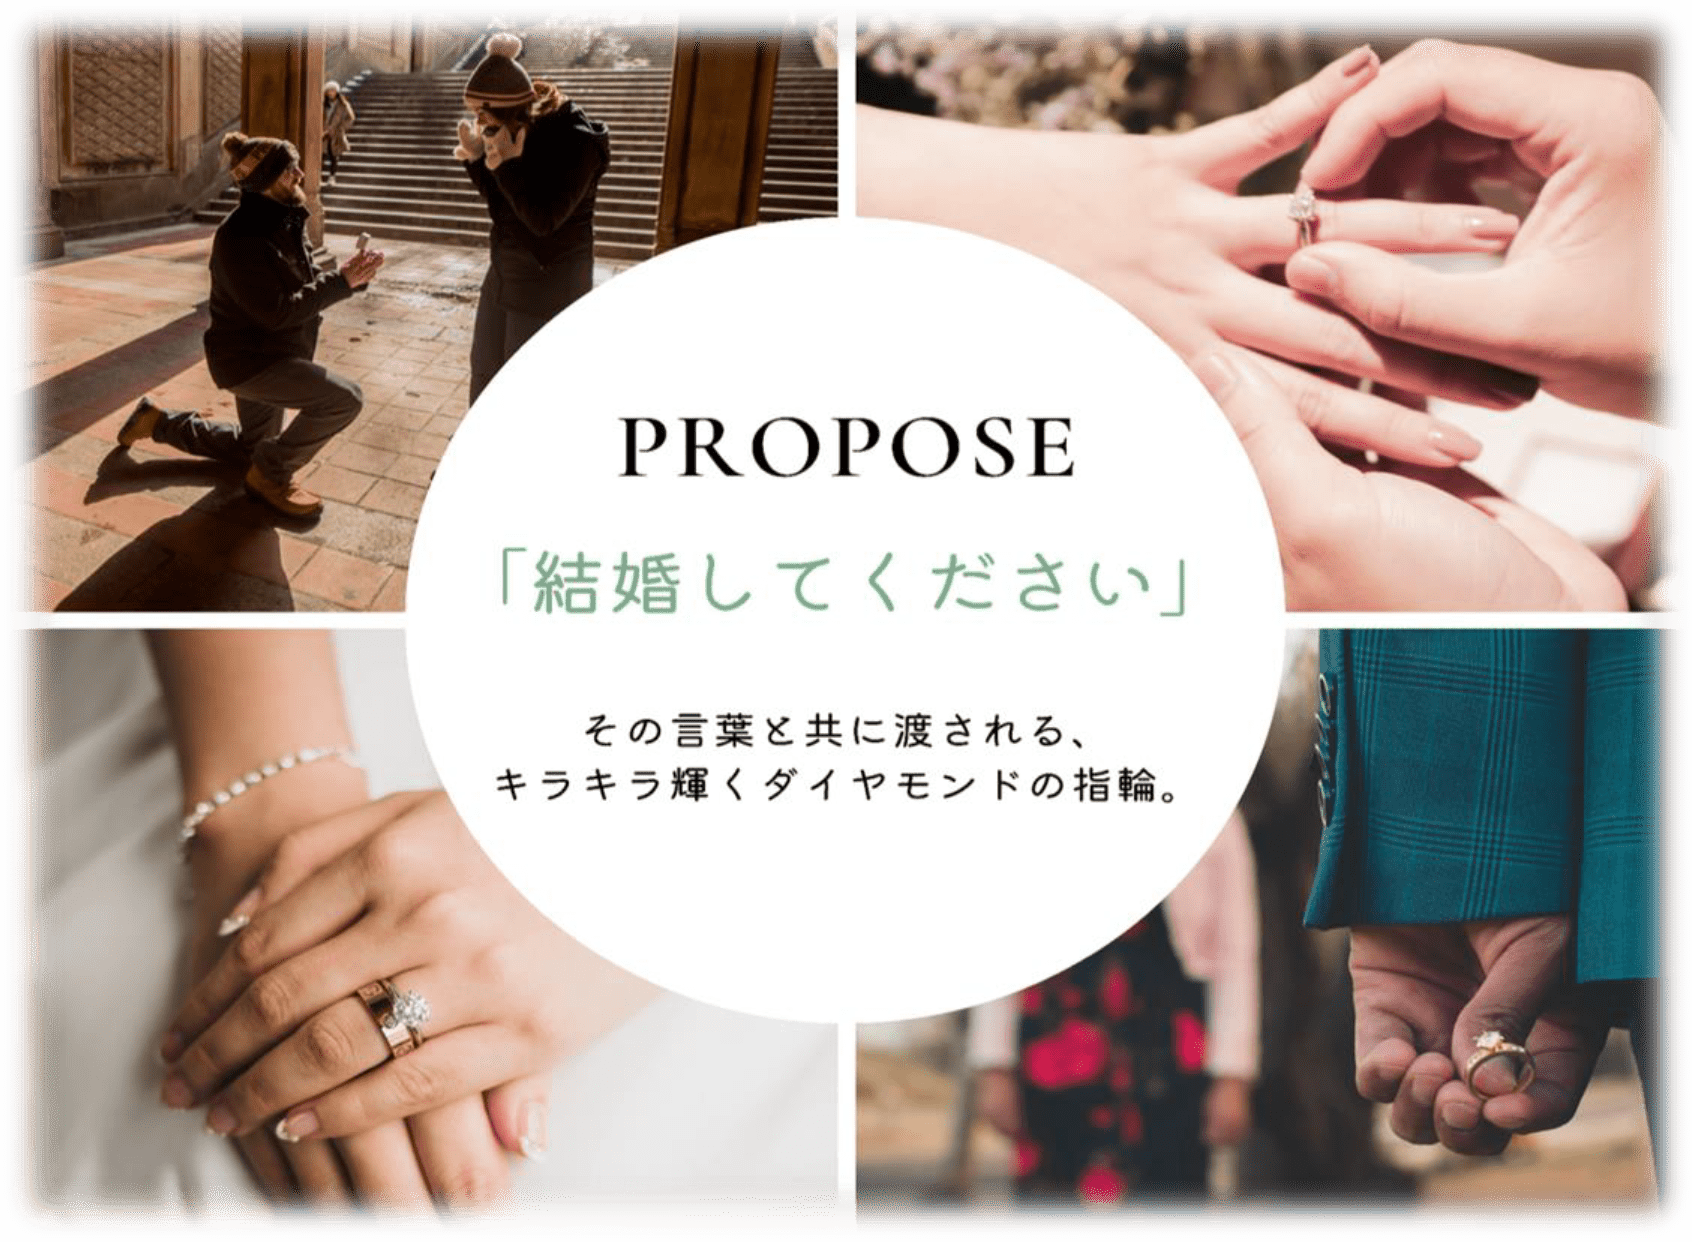 PROPOSE「結婚してください」その言葉と共に渡される、キラキラ輝くダイヤモンドの指輪。